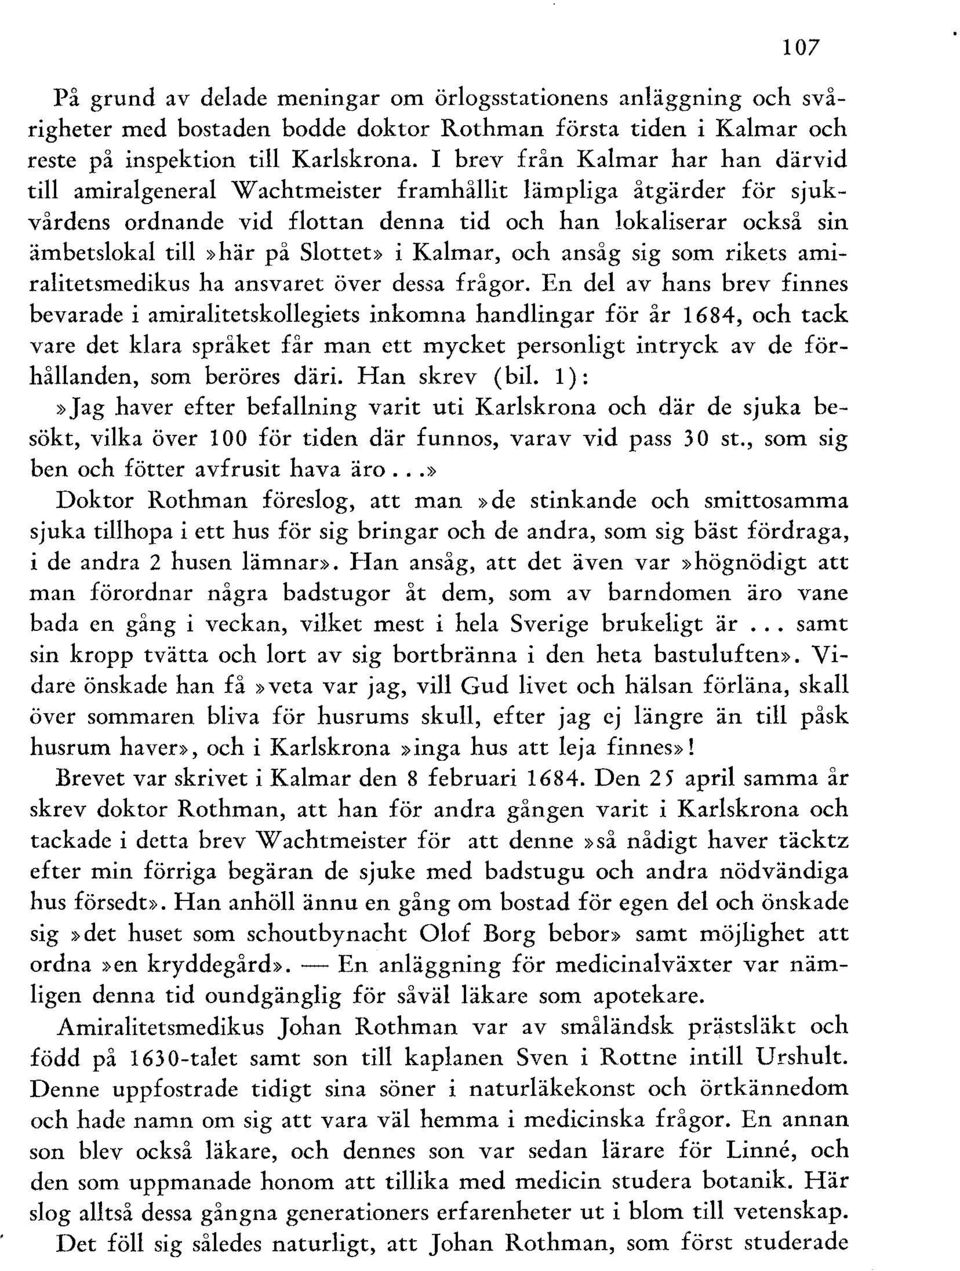 Slottet» i Kalmar, och ansåg sig som rikets amiralitetsmedikus ha ansvaret över dessa frågor.